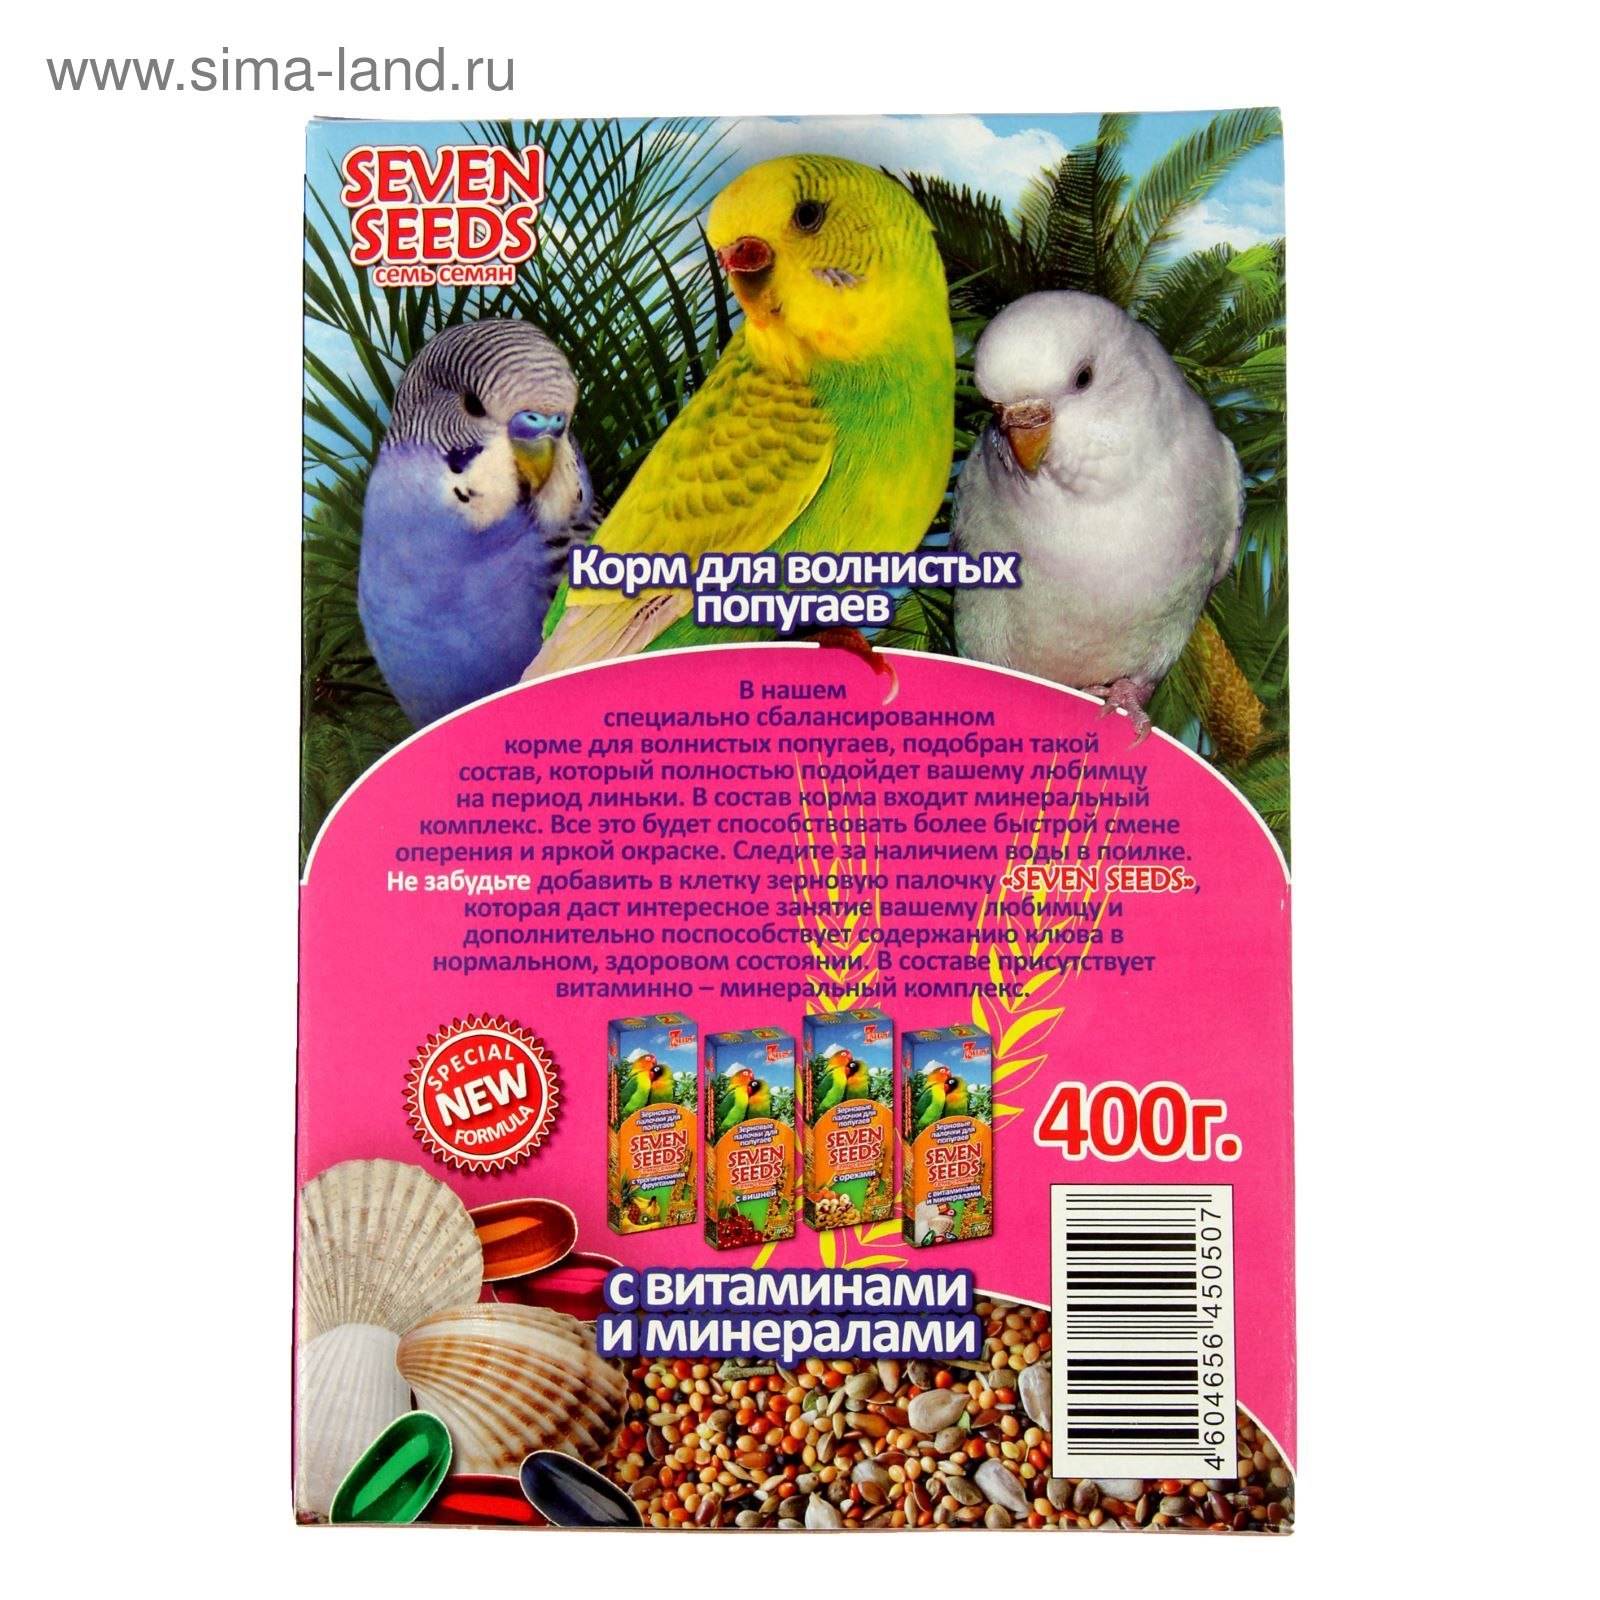 Корм для попугаев корелла. "Seven Seeds" корм д/волнистых попугаев Special с витаминами и минералами 400г*16. Жорка корм для попугаев с минералами. Корма для попугаев Жорка витамины. Корм для попугаев волн. "Seven Seeds" SUPERMIX 1000г*6.